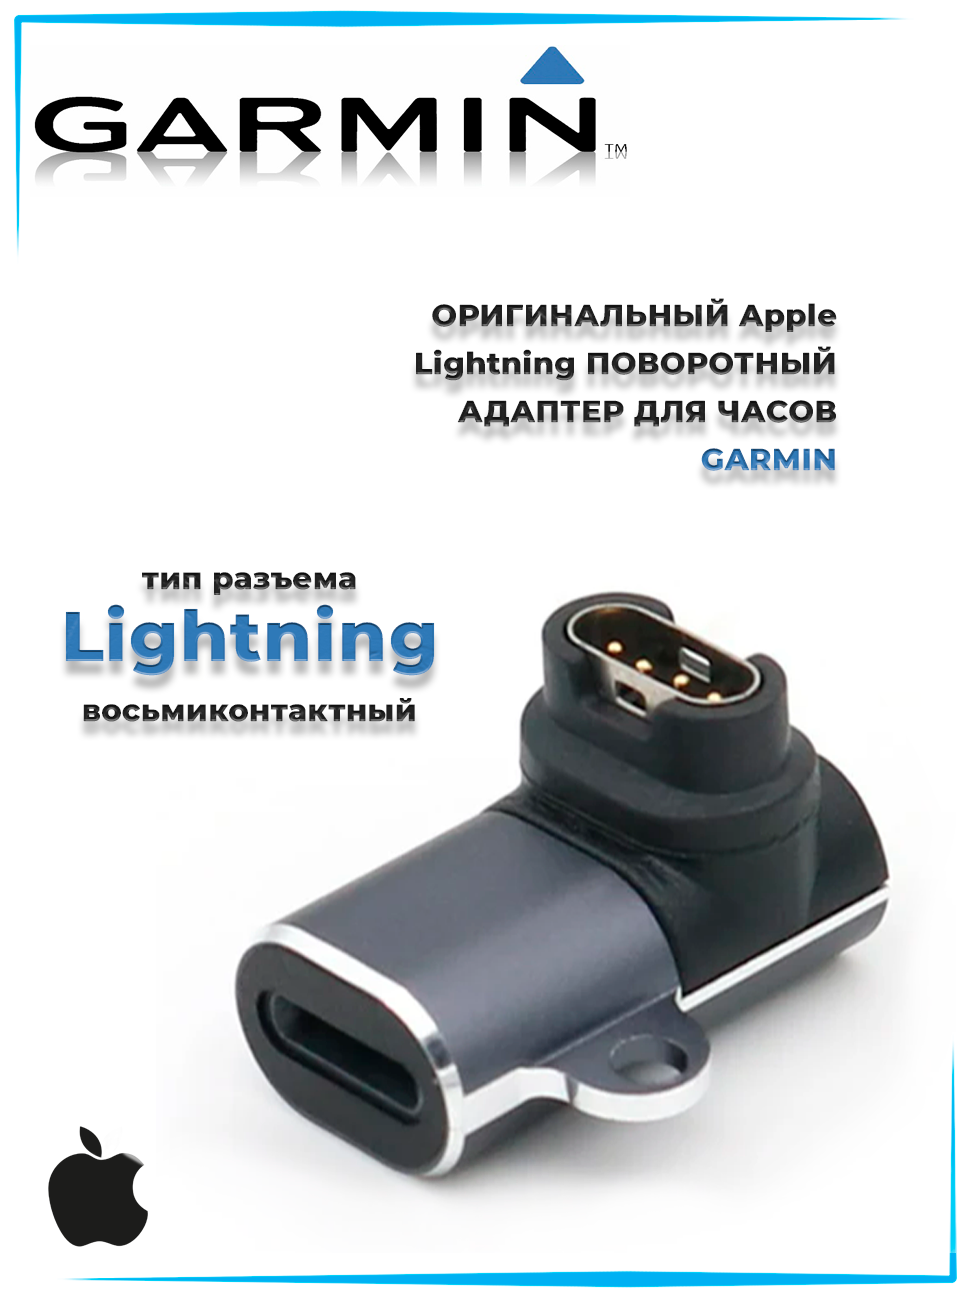 Переходник Lightning для зарядки часов Garmin (поворотный)